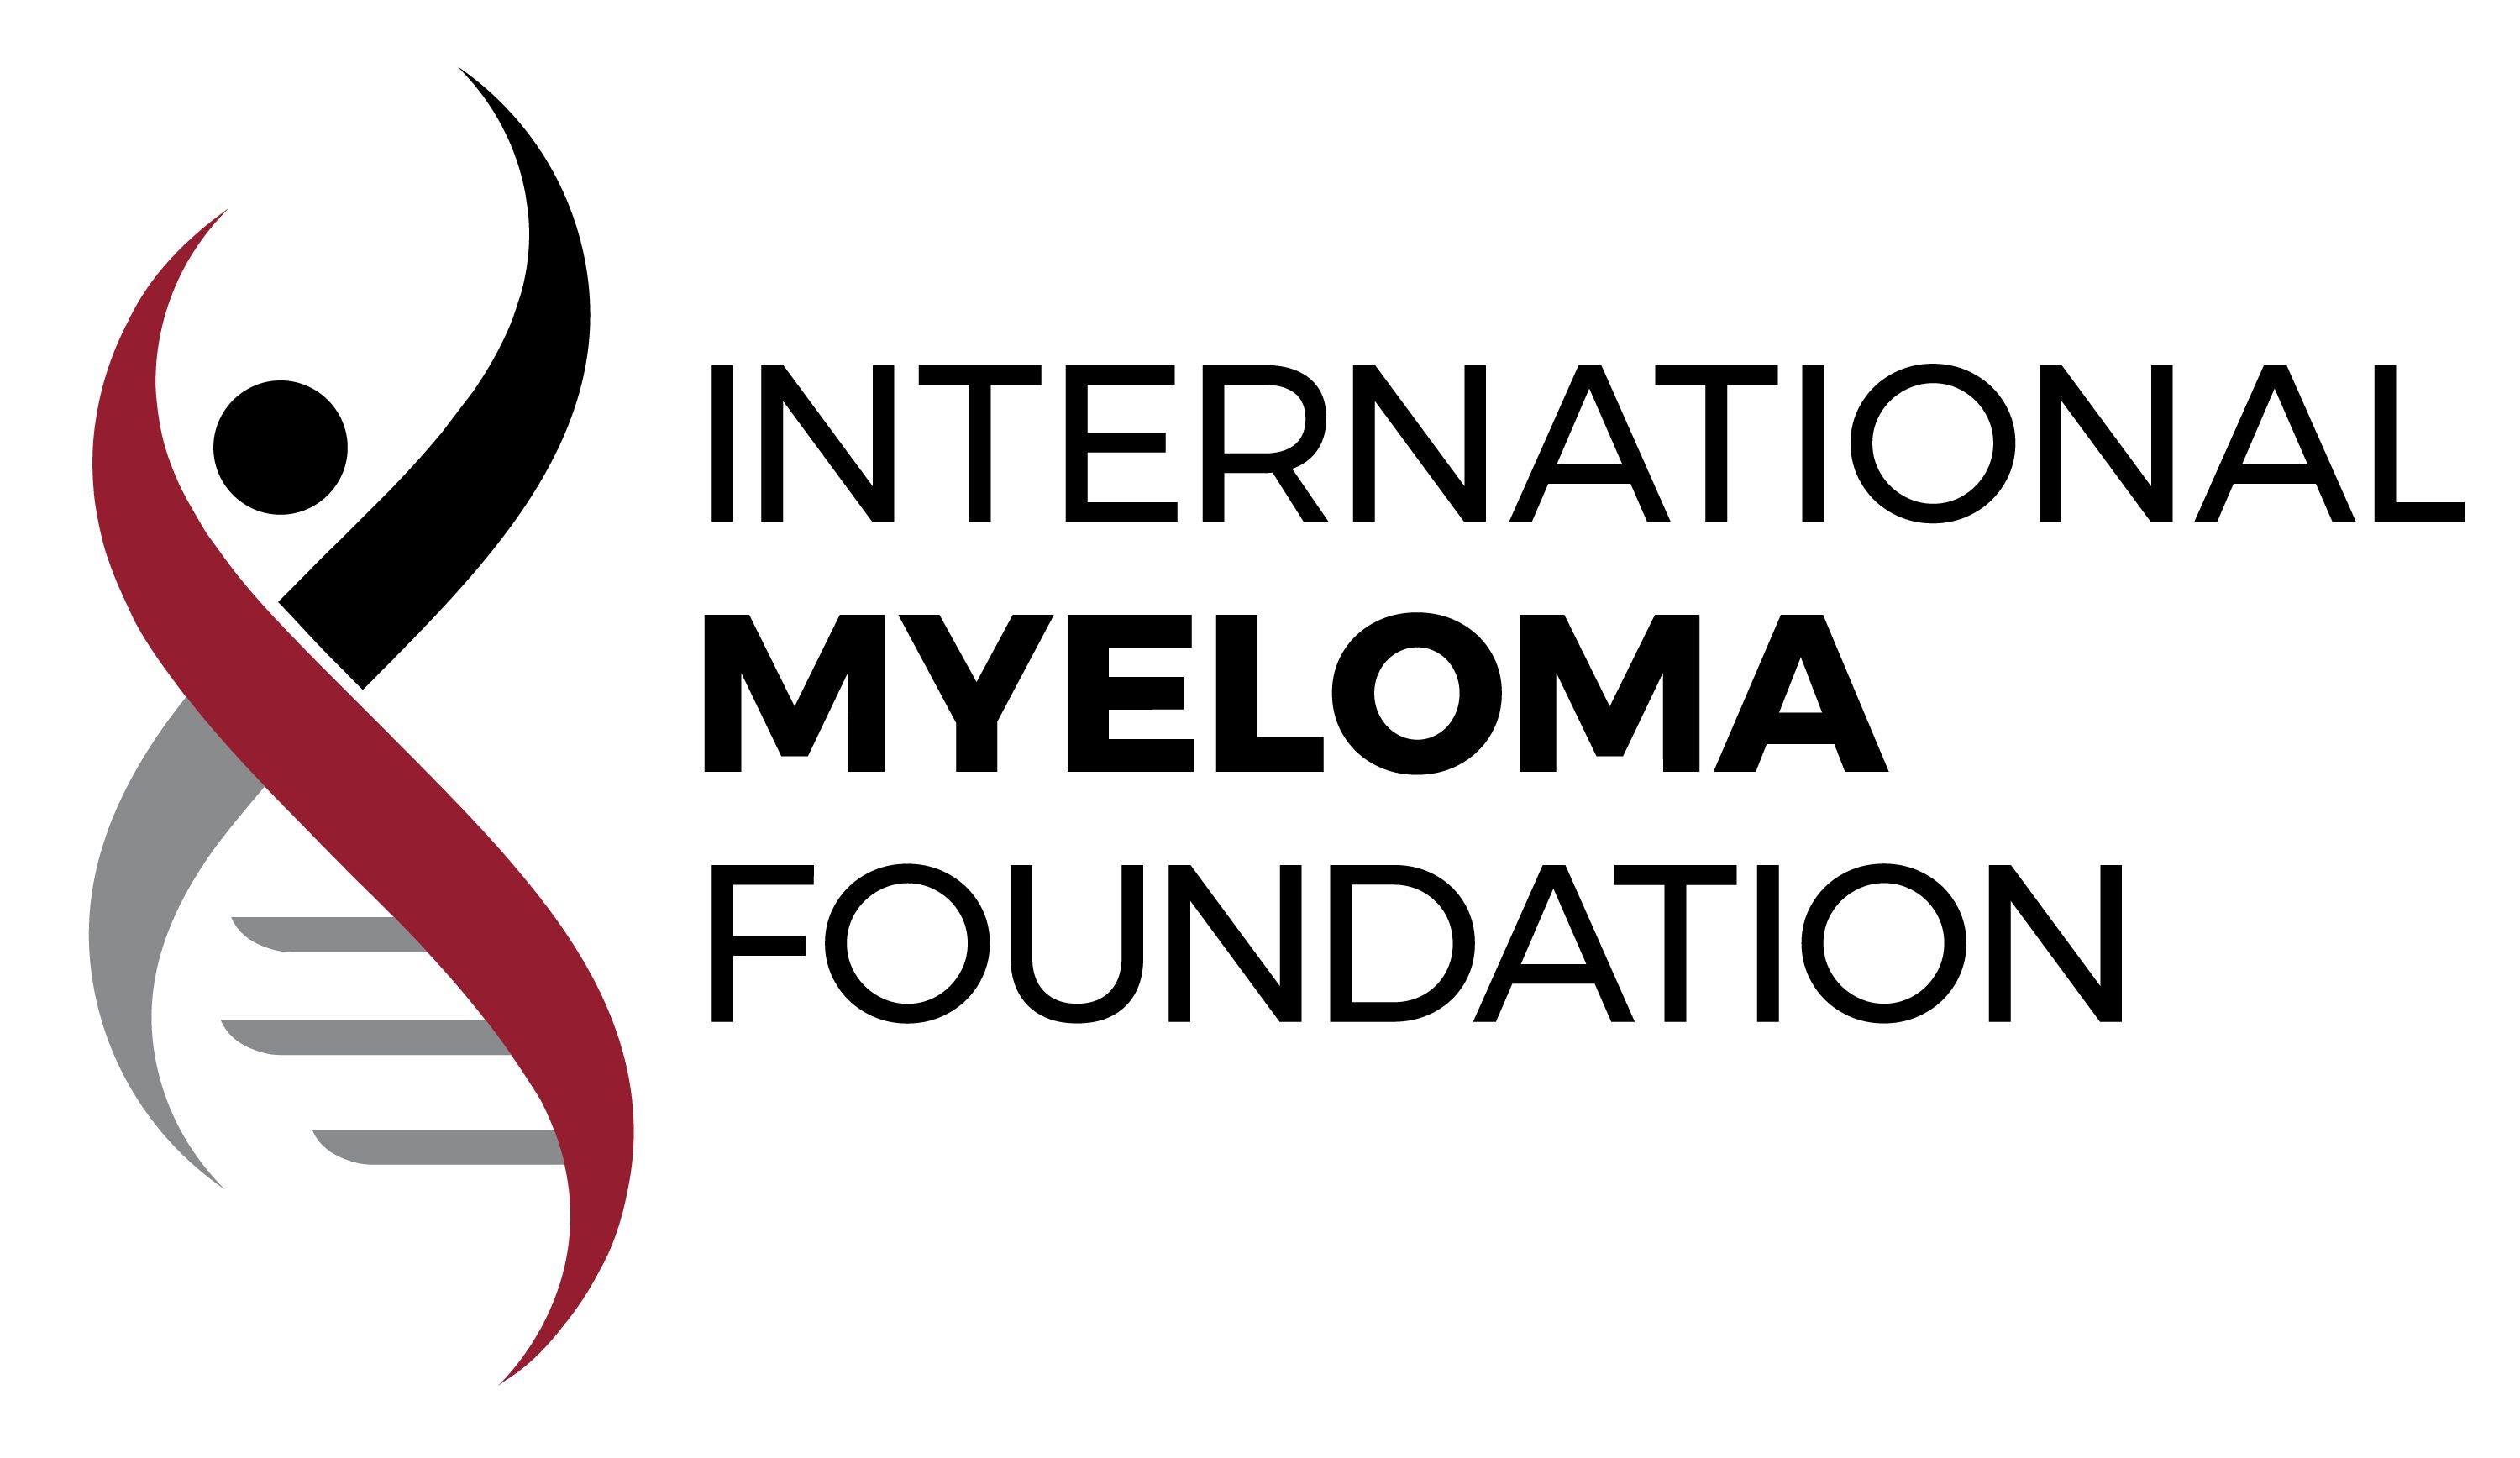 International Myeloma Foundation